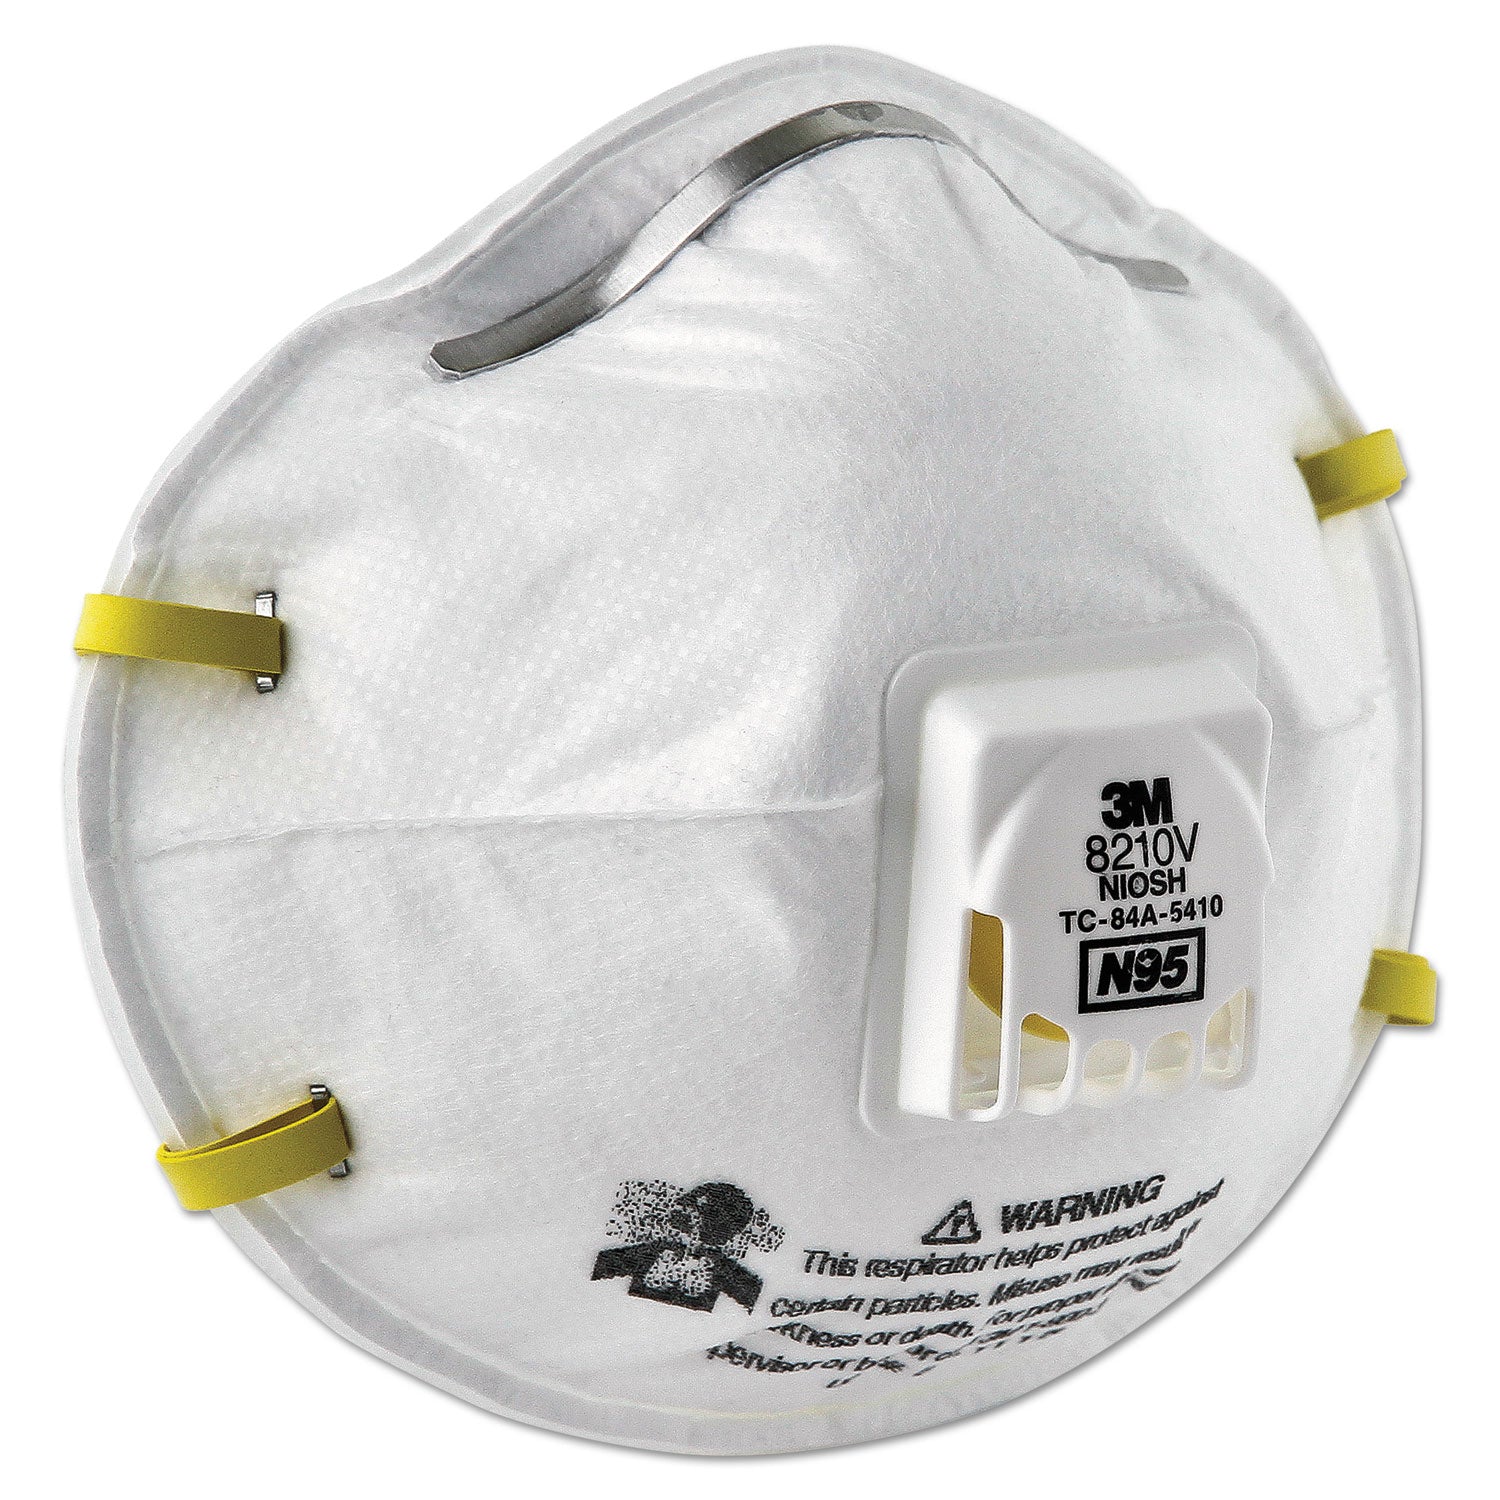 particulate-respirator-8210v-n95-cool-flow-valve-standard-size-10-box_mmm8210v - 2